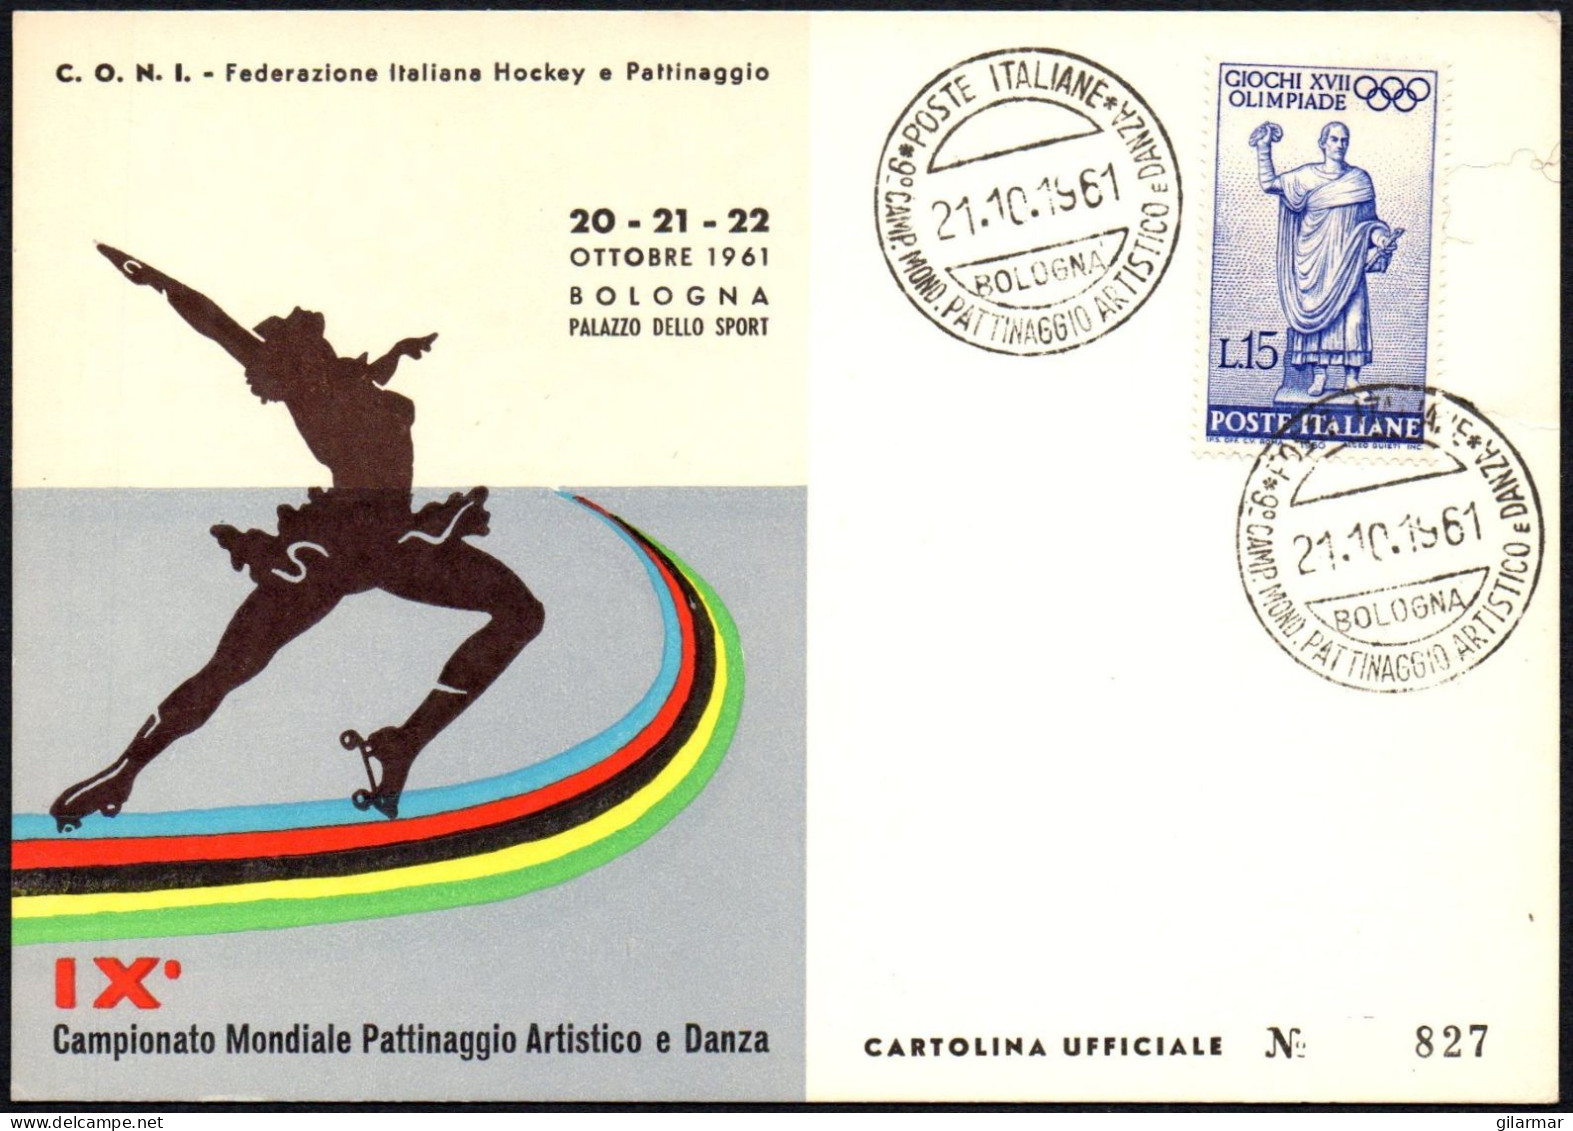 SKATING - ITALIA BOLOGNA 21.10.1961 - IX CAMPIONATO MONDIALE PATTINAGGIO ARTISTICO E DANZA - CARTOLINA UFFICIALE - M - Figure Skating